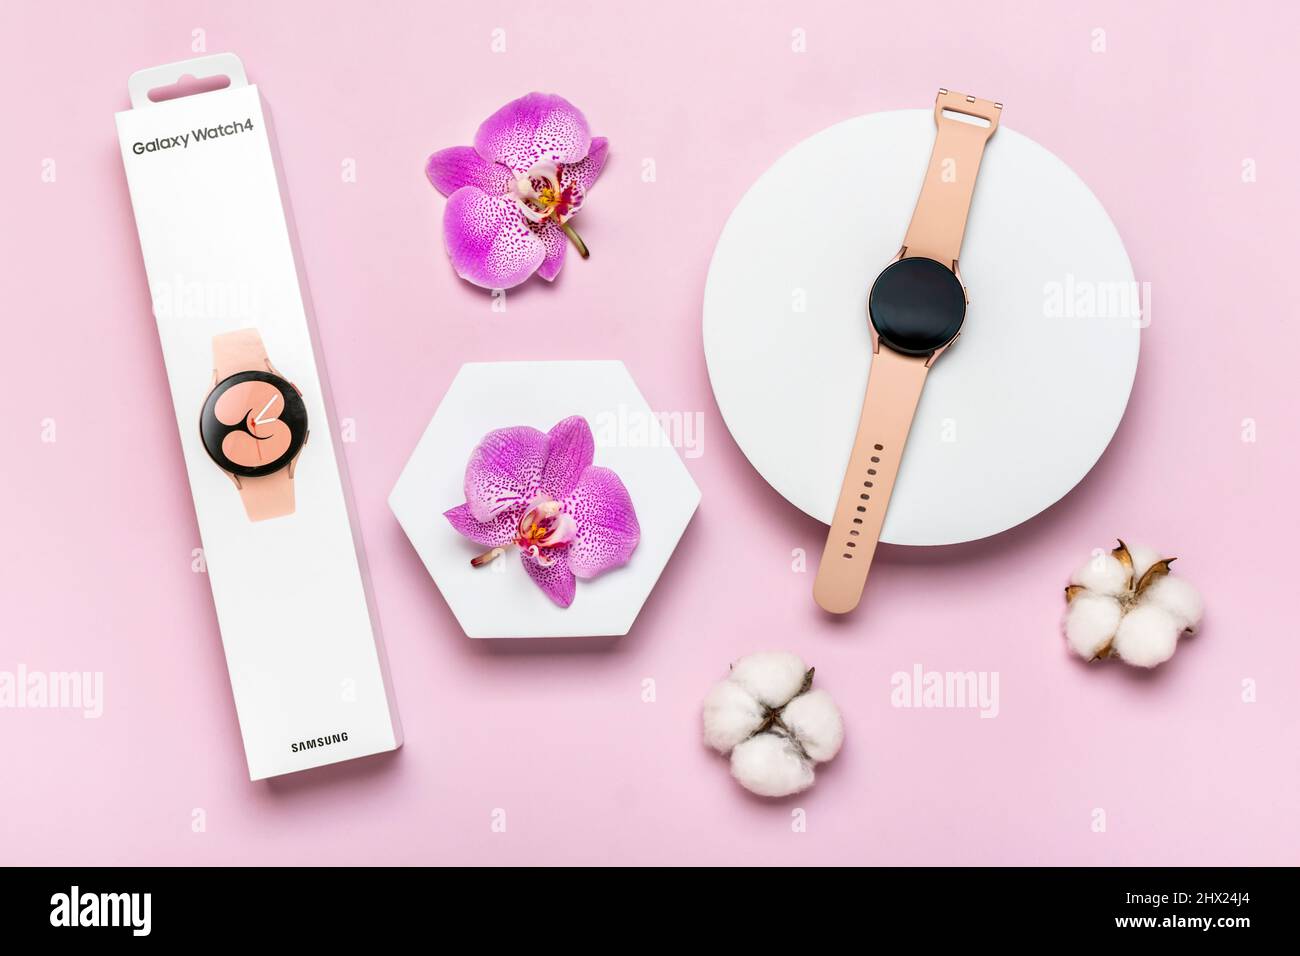 Samsung Galaxy Watch Active 4 được săn đón rộng rãi ở Bangkok, Thái Lan với thiết kế thời trang và cùng những tính năng thông minh độc đáo. Đây là sản phẩm phù hợp cho những người yêu thích sự tiện lợi và phong cách, hãy tới đại lý để tận hưởng trải nghiệm độc đáo của chiếc đồng hồ này.